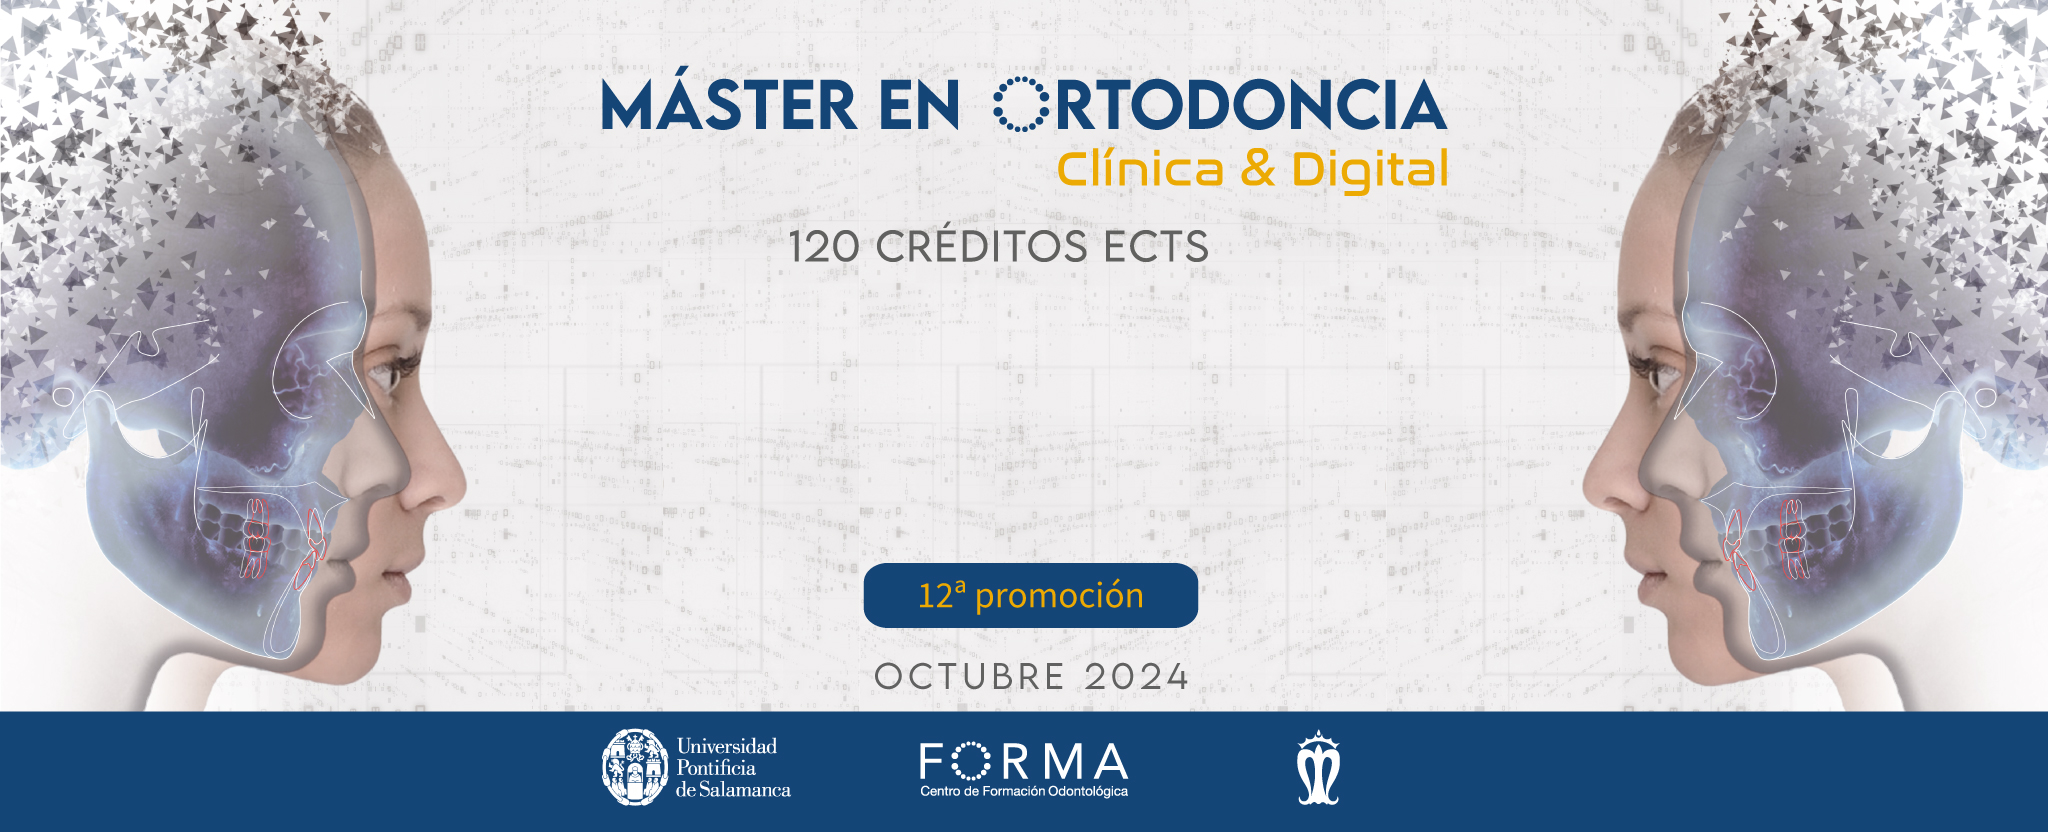 master-ortodoncia-clinica-digital